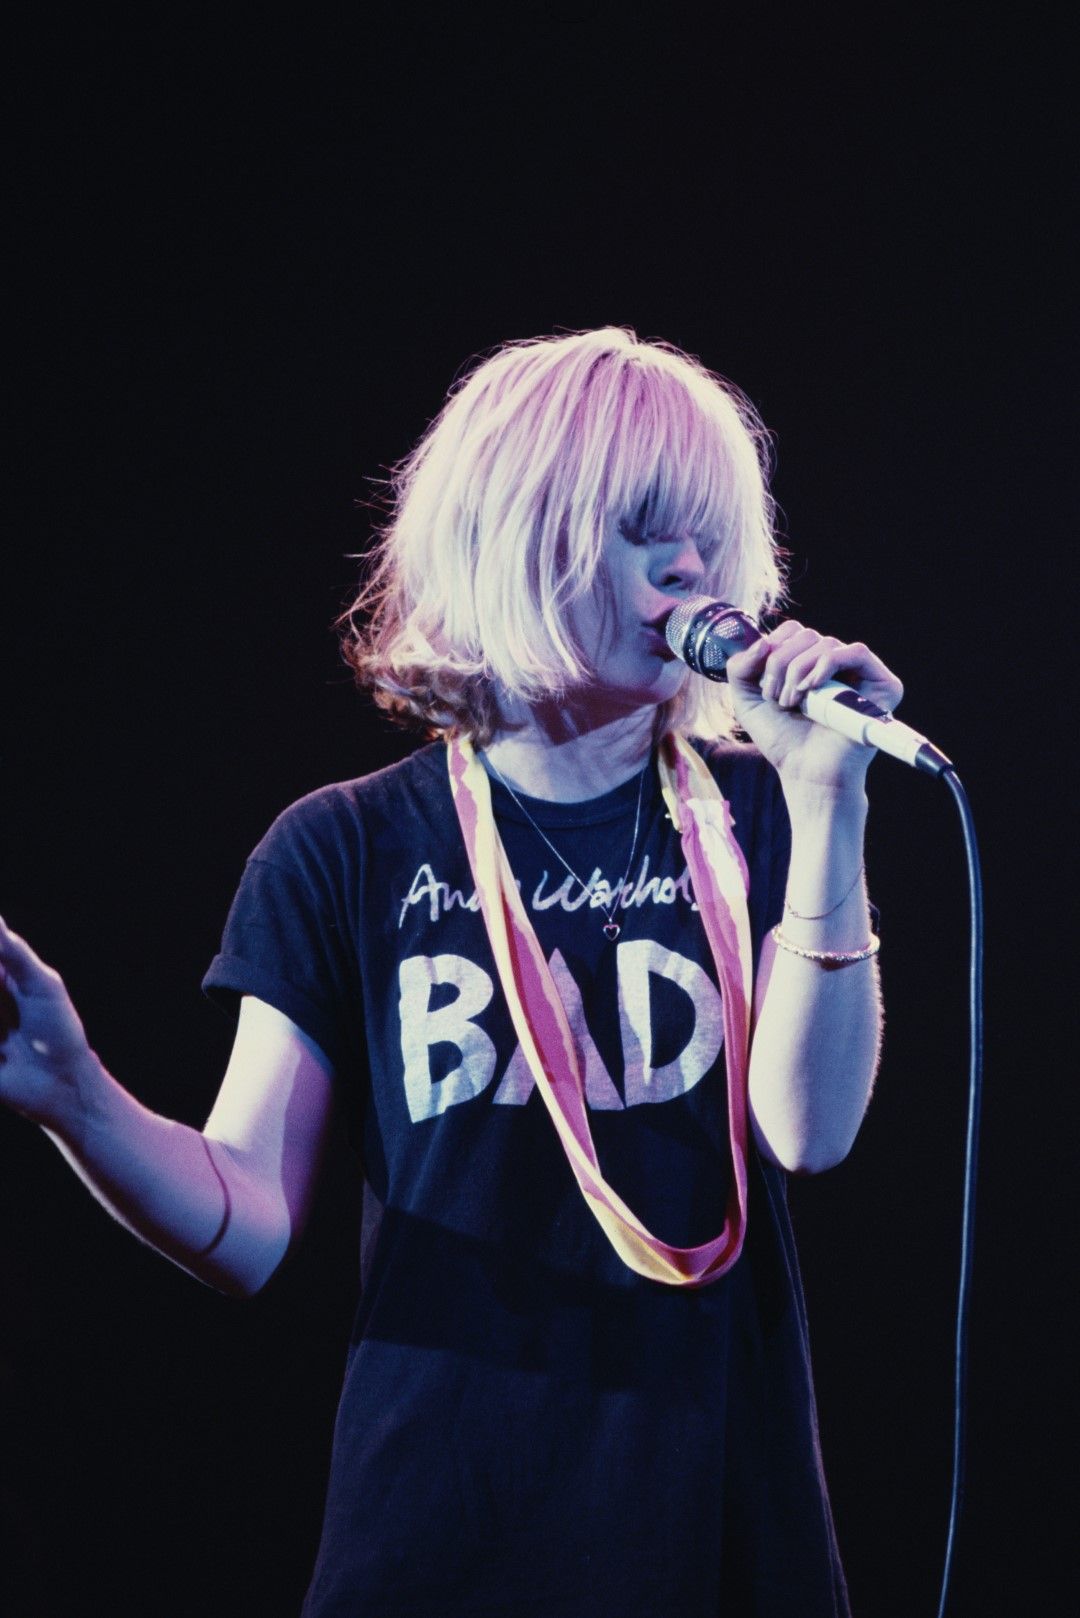 Blondie на концерт през 1980 г. Деби Хари е облечена с тениска, на която пише "Andy Warhol is bad"